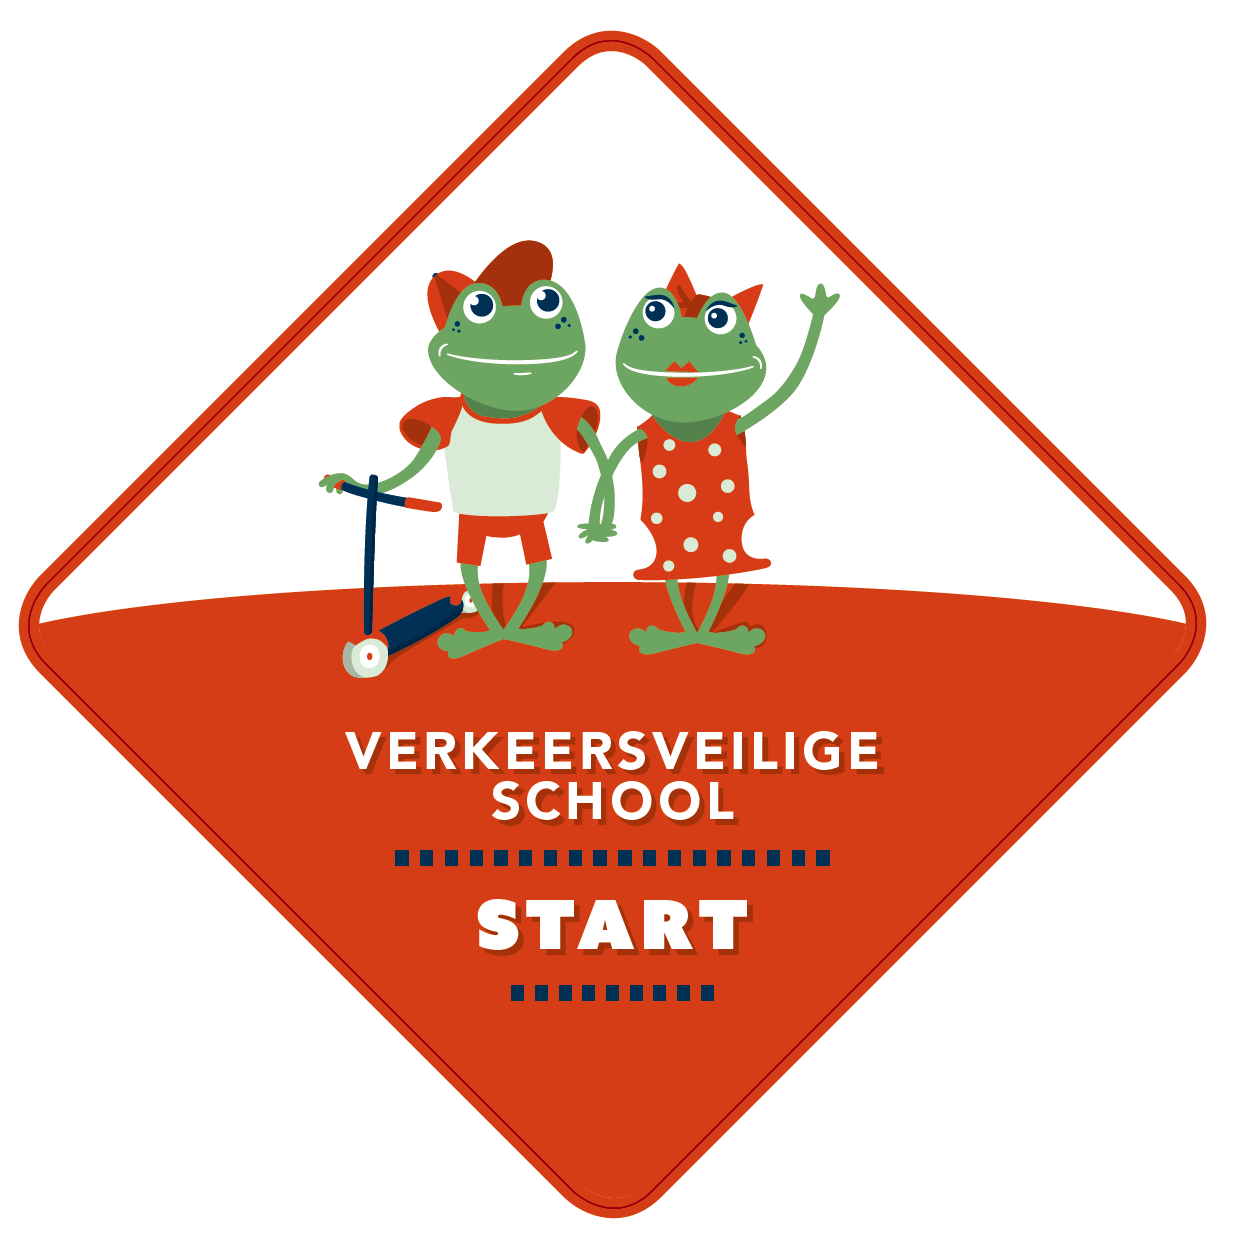 Scholentraject: integrale benadering schoolomgevingen 3 jaar traject Erkenning label verkeersveilige school met fiets- en voetpad!